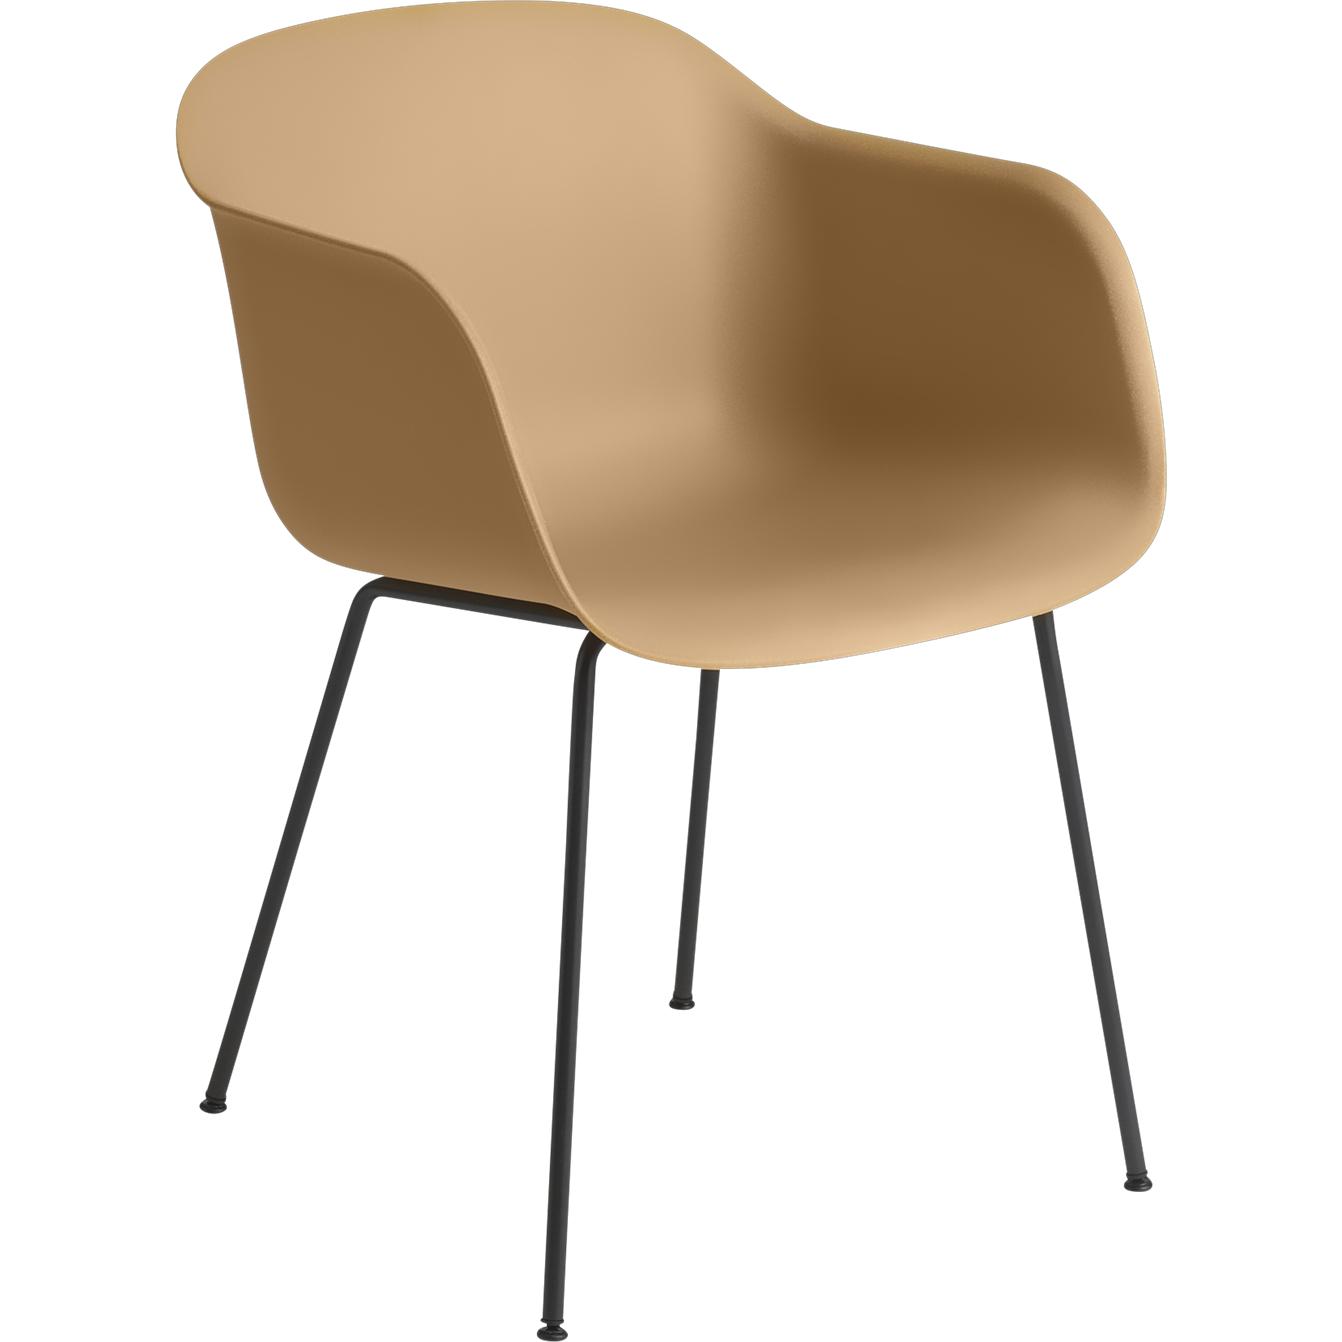 Base de tube de fauteuil en fibre Muuto, siège en fibre, marron / noir